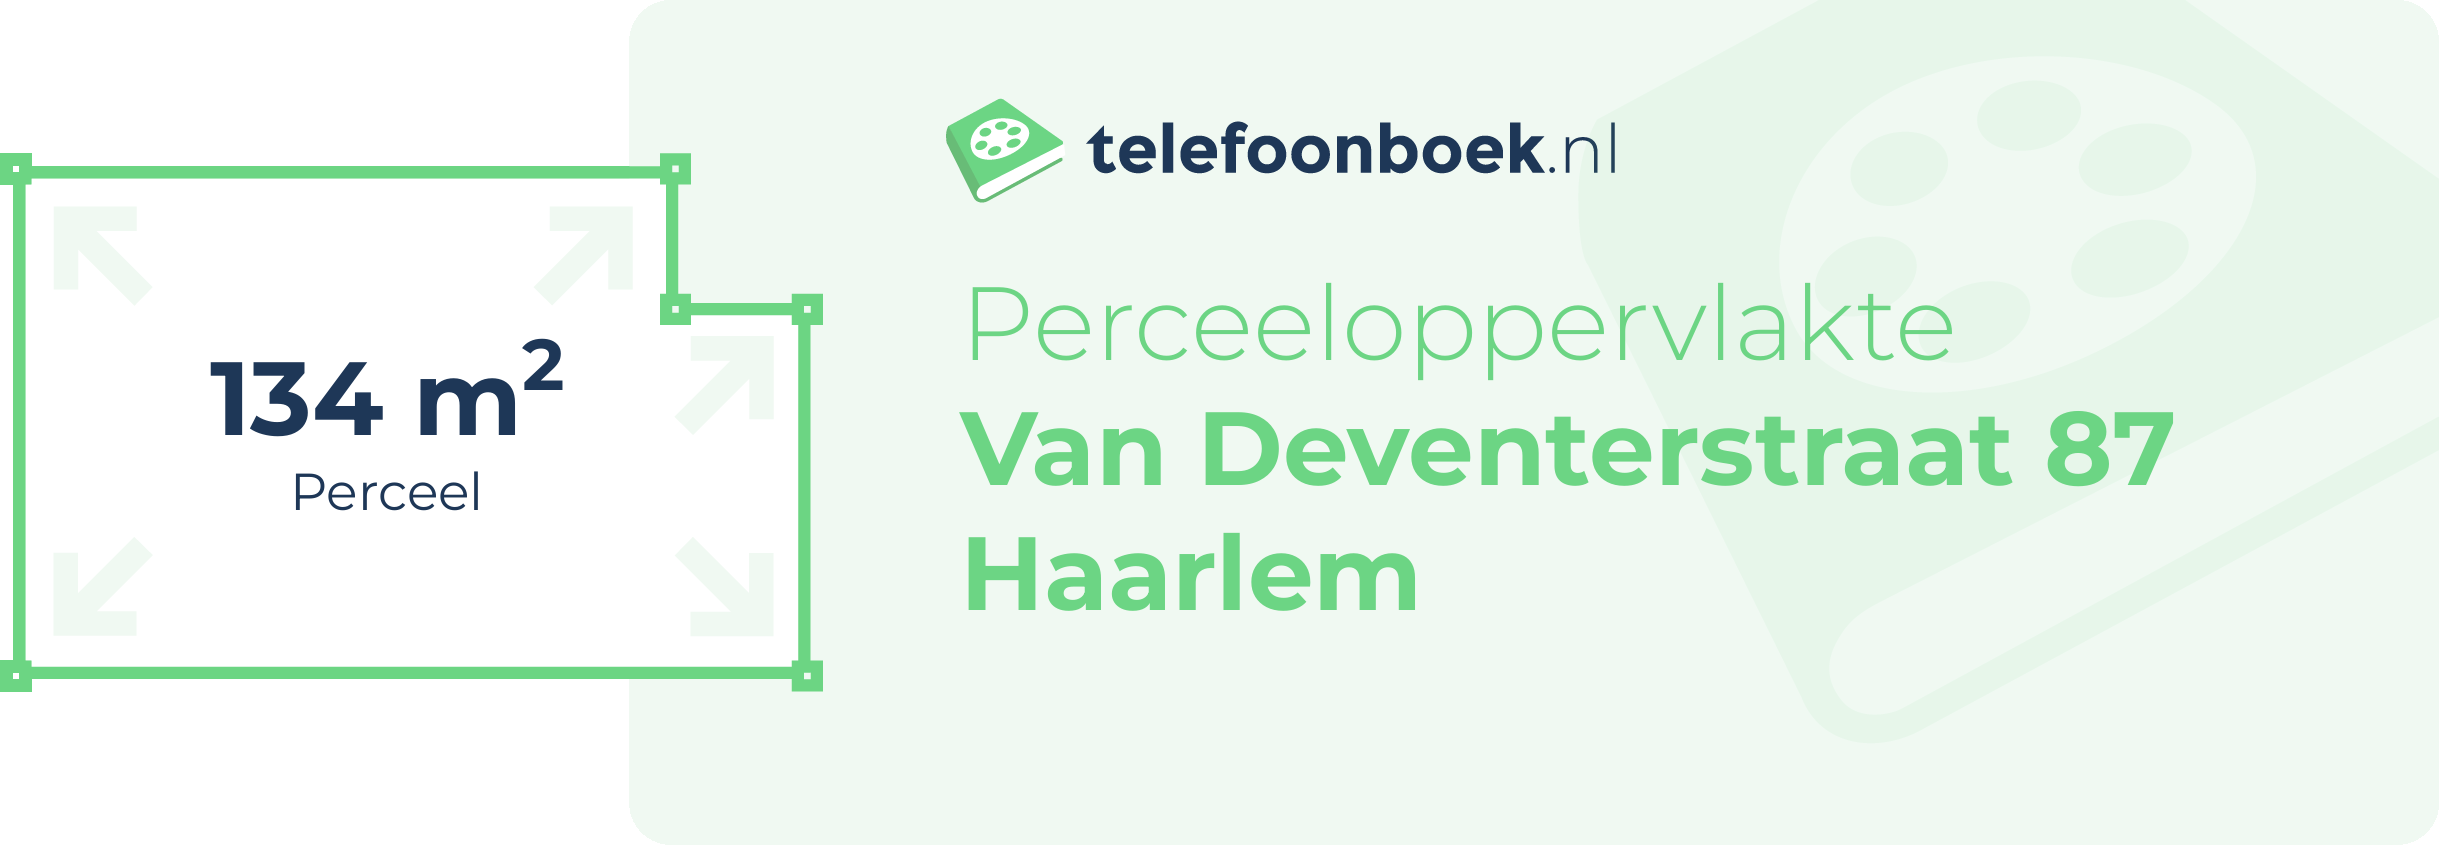 Perceeloppervlakte Van Deventerstraat 87 Haarlem